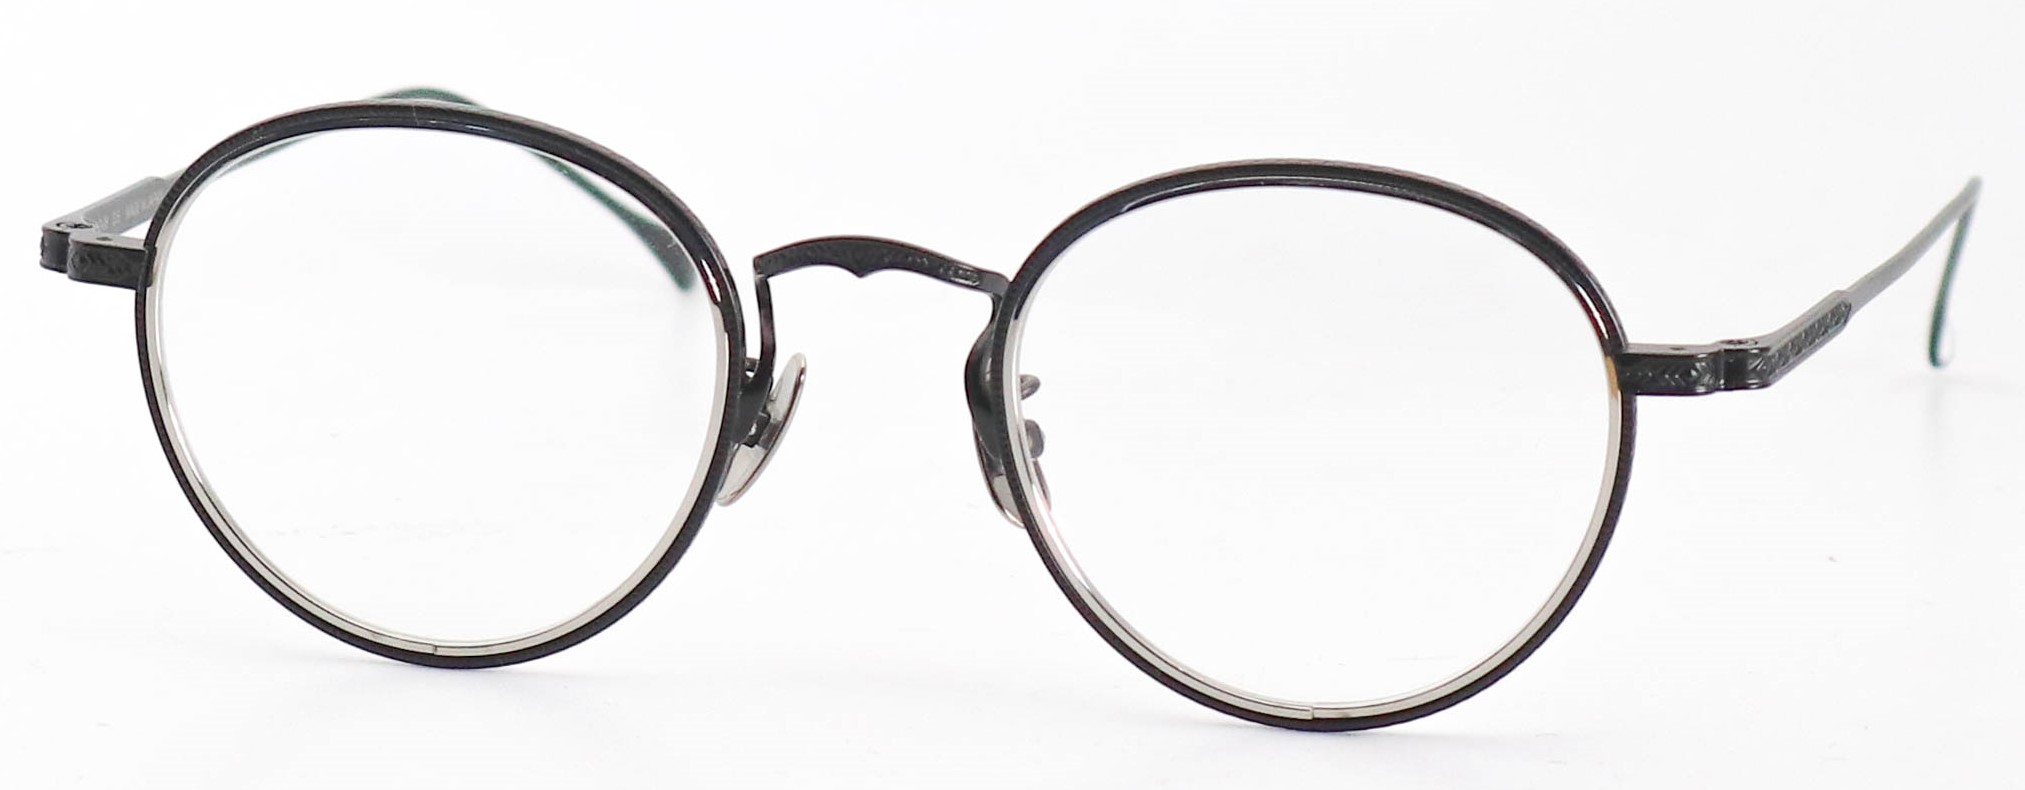 眼鏡のカラータイプC-5 Silver/Black-Matt